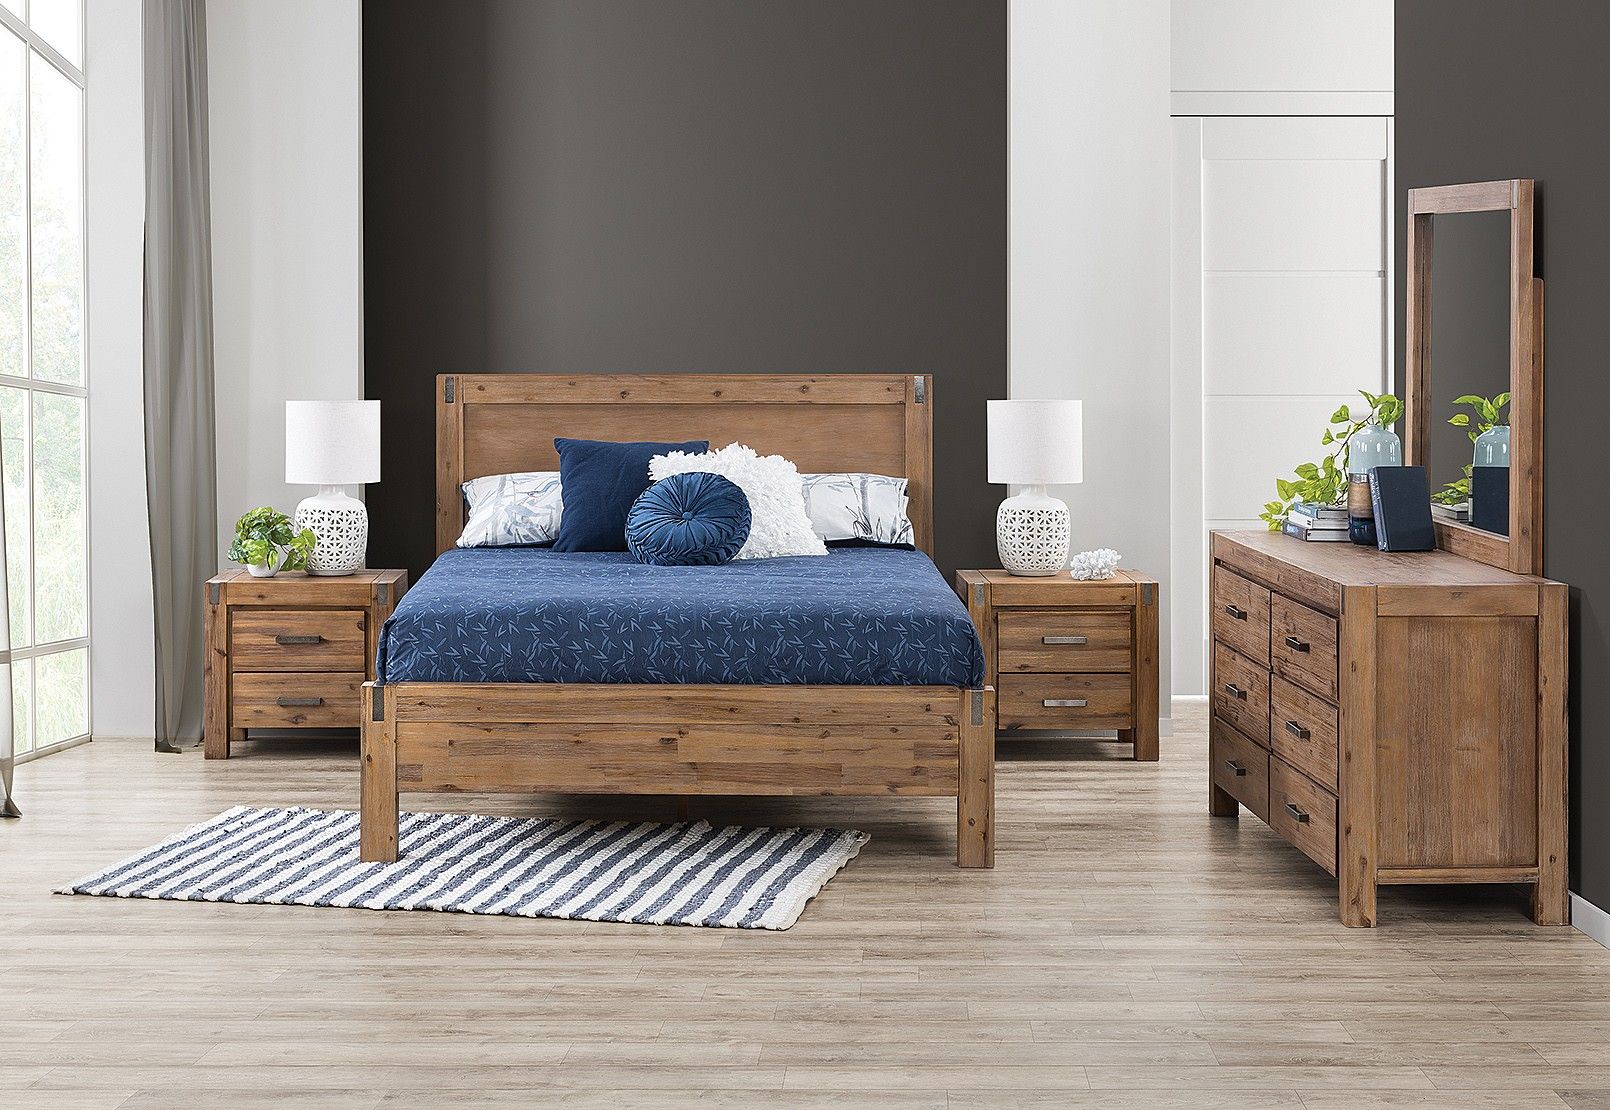 Mẫu táp đầu giường đẹp bằng gỗ theo phong cách tân cổ điển cho không gian gần gũi